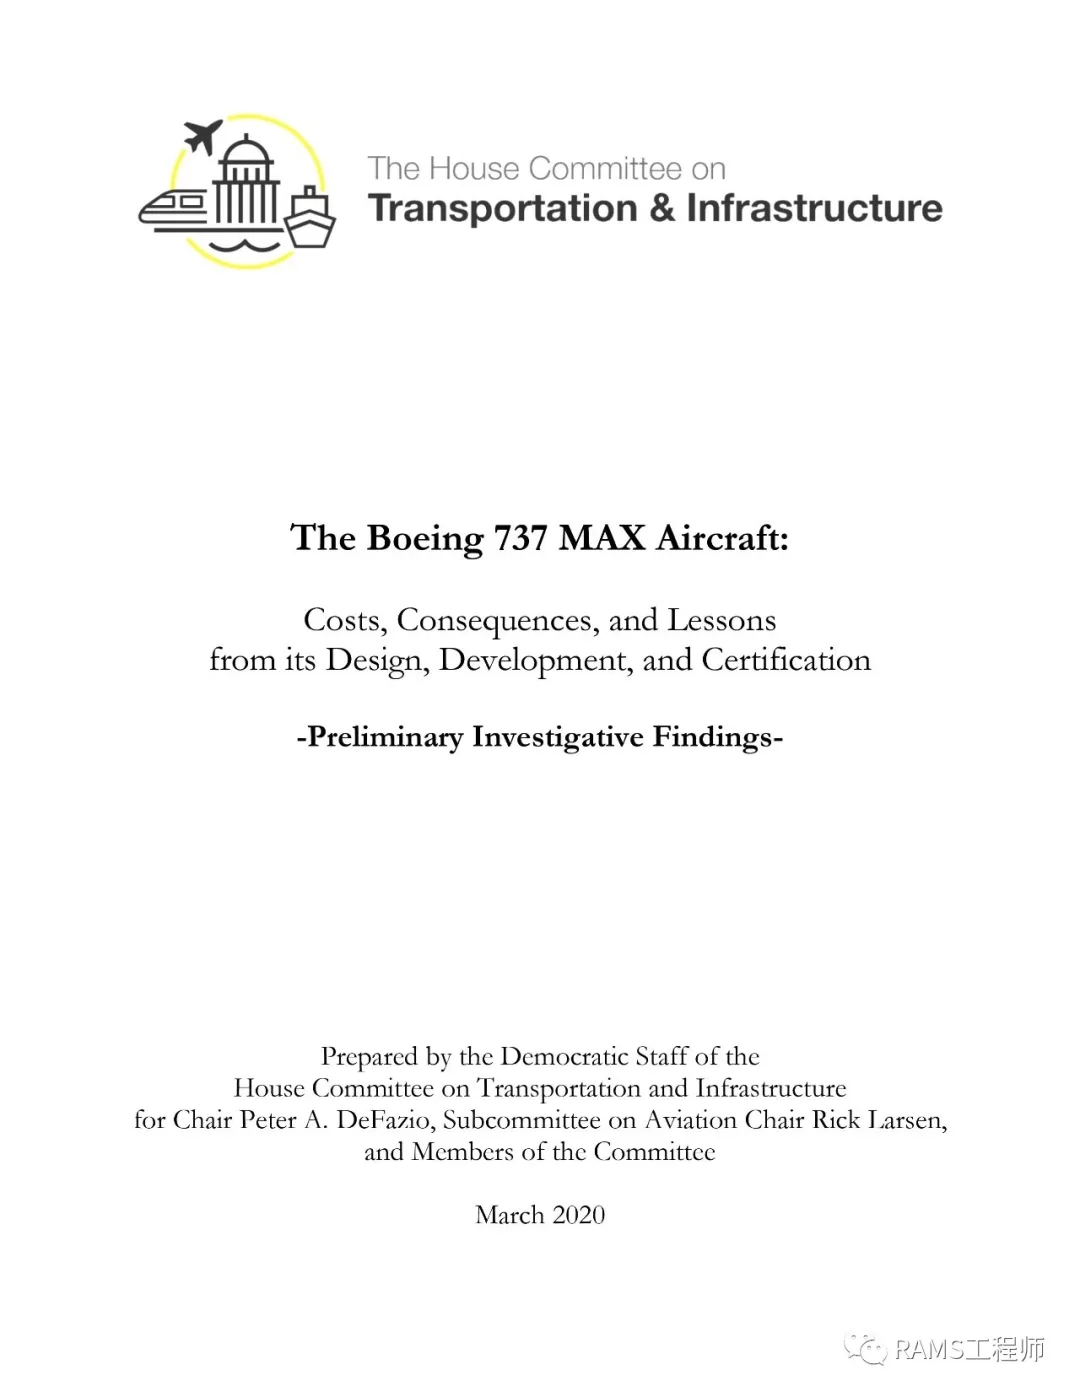 波音737 MAX事故对于功能安全从业人员的一些警示